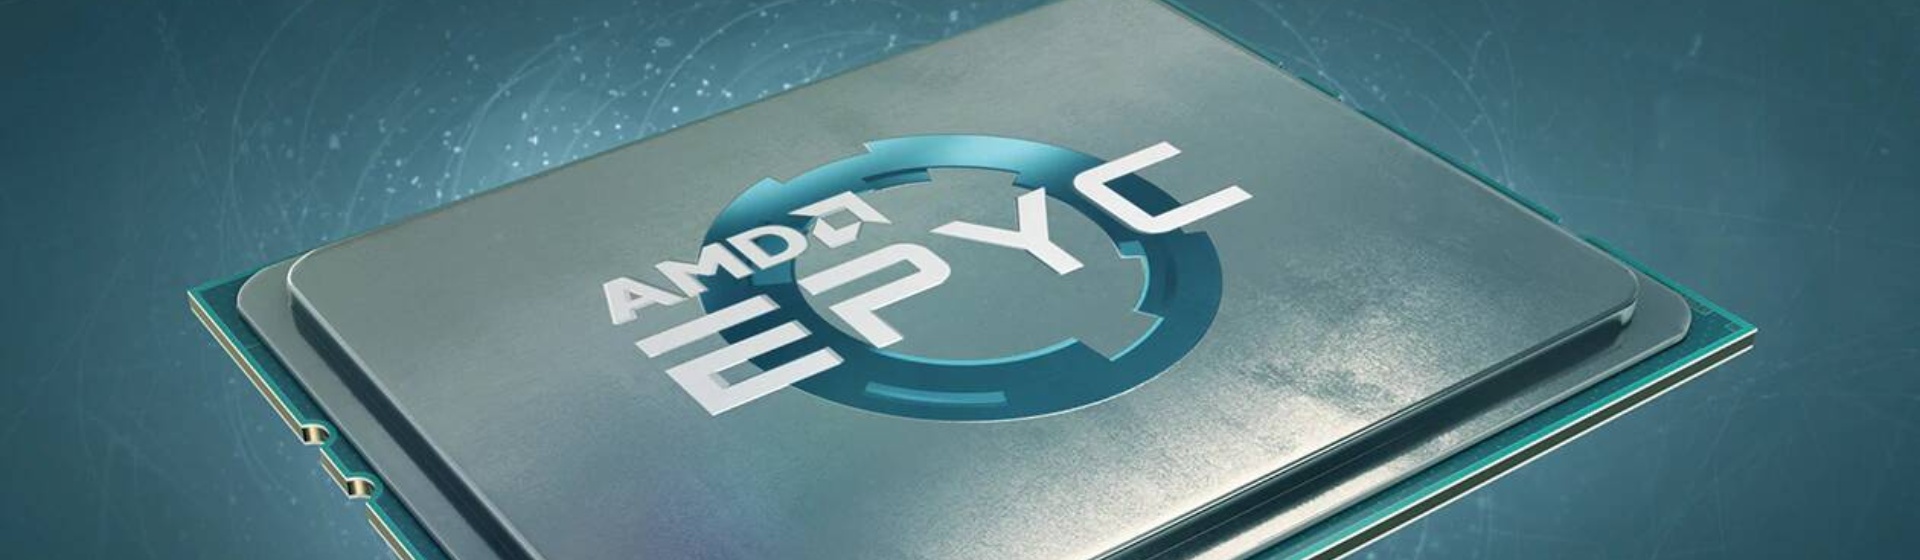 Vi xử lý AMD EPYC thế hệ hai thay đổi cuộc chơi với nhiều thành tích mới